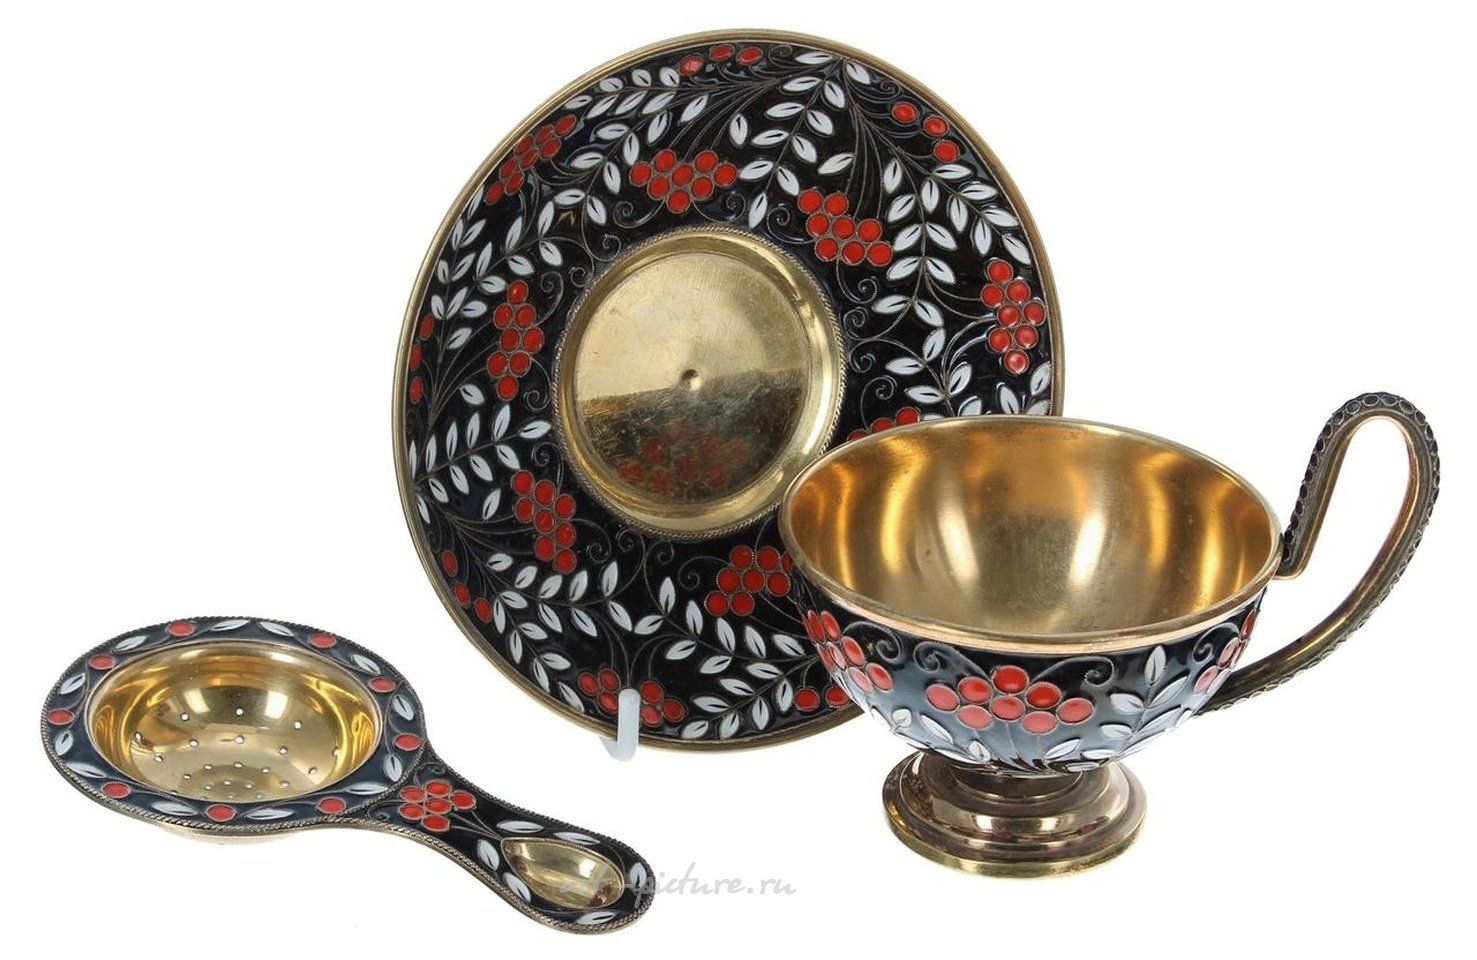 Русское серебро , Чашка, блюдце и ситечко для чая из русского серебра с позолотой